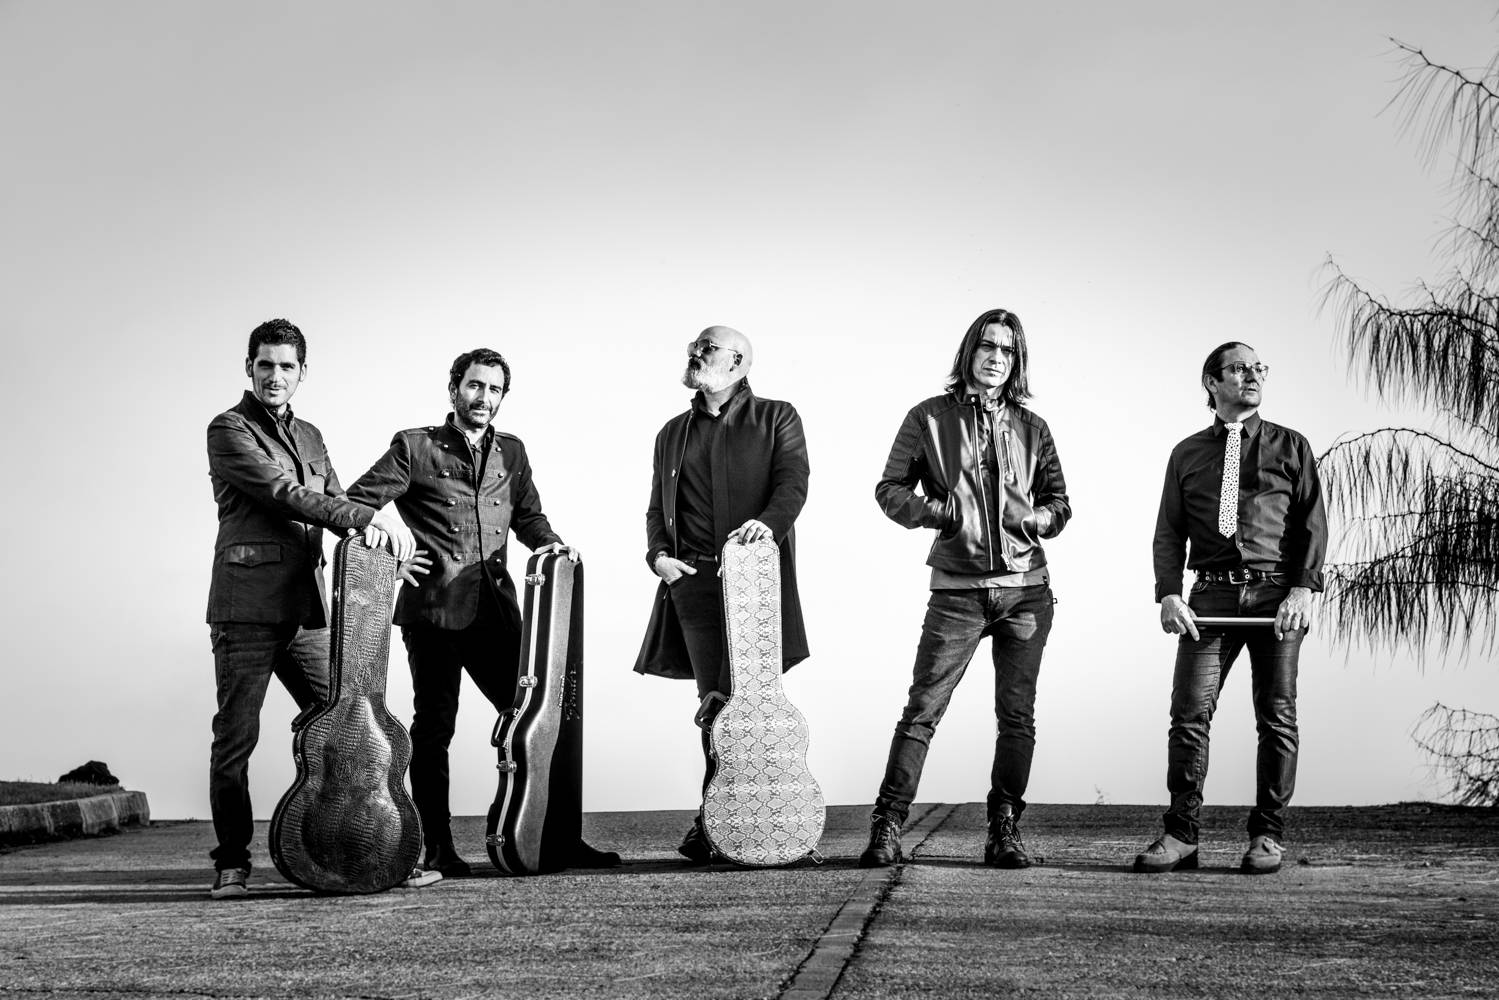 Fotografía en blanco y negro de los miembros de la banda Heiser que aparecen de pie en una carretera junto con algunos de sus instrumentos